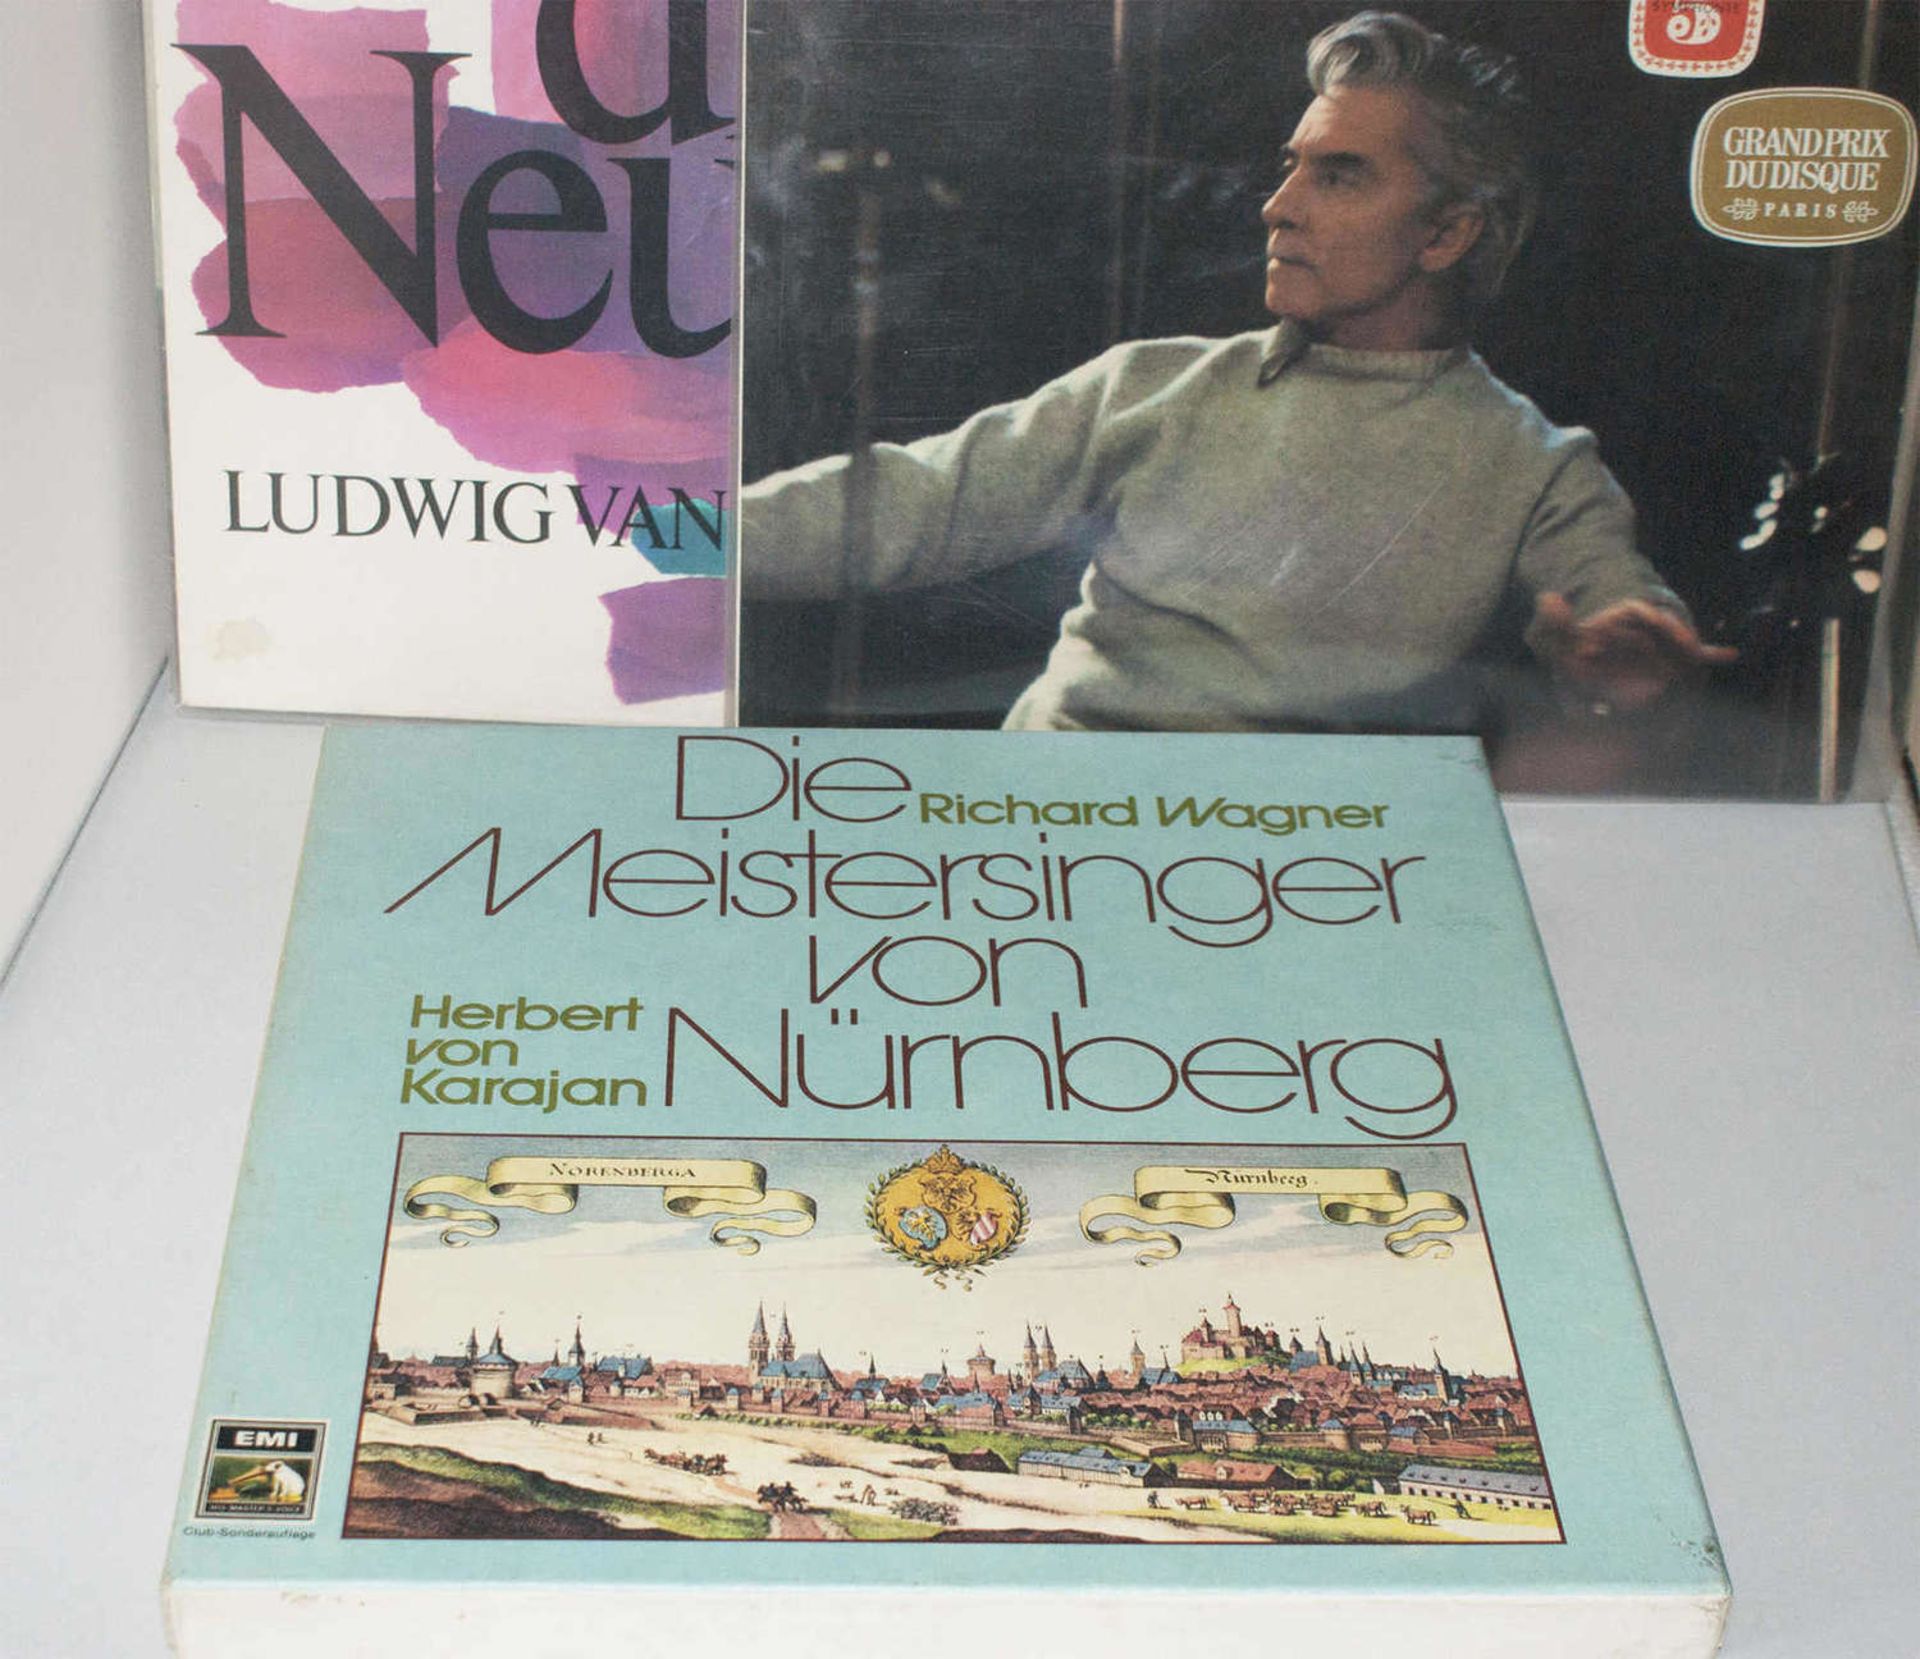 Lot Schallplatten, Thema "Herbert von Karajan", dabei Richard Wagner, Symphonie Nr. 5, etc. Guter - Bild 2 aus 2